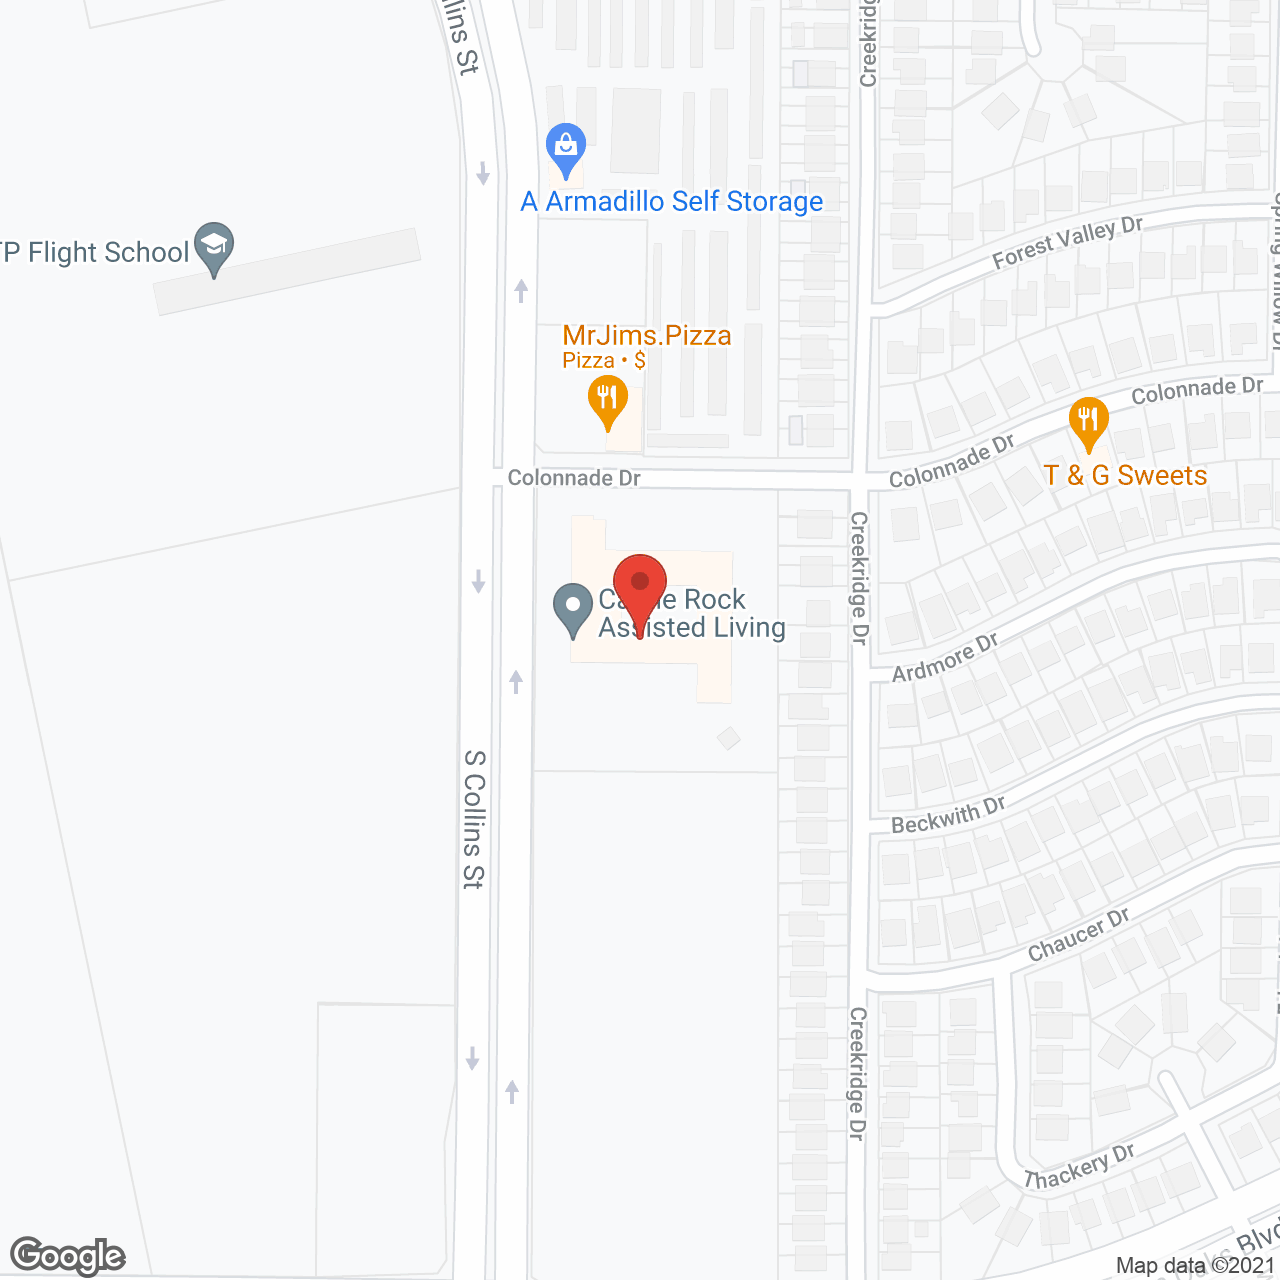 A Castle Rock Community in google map